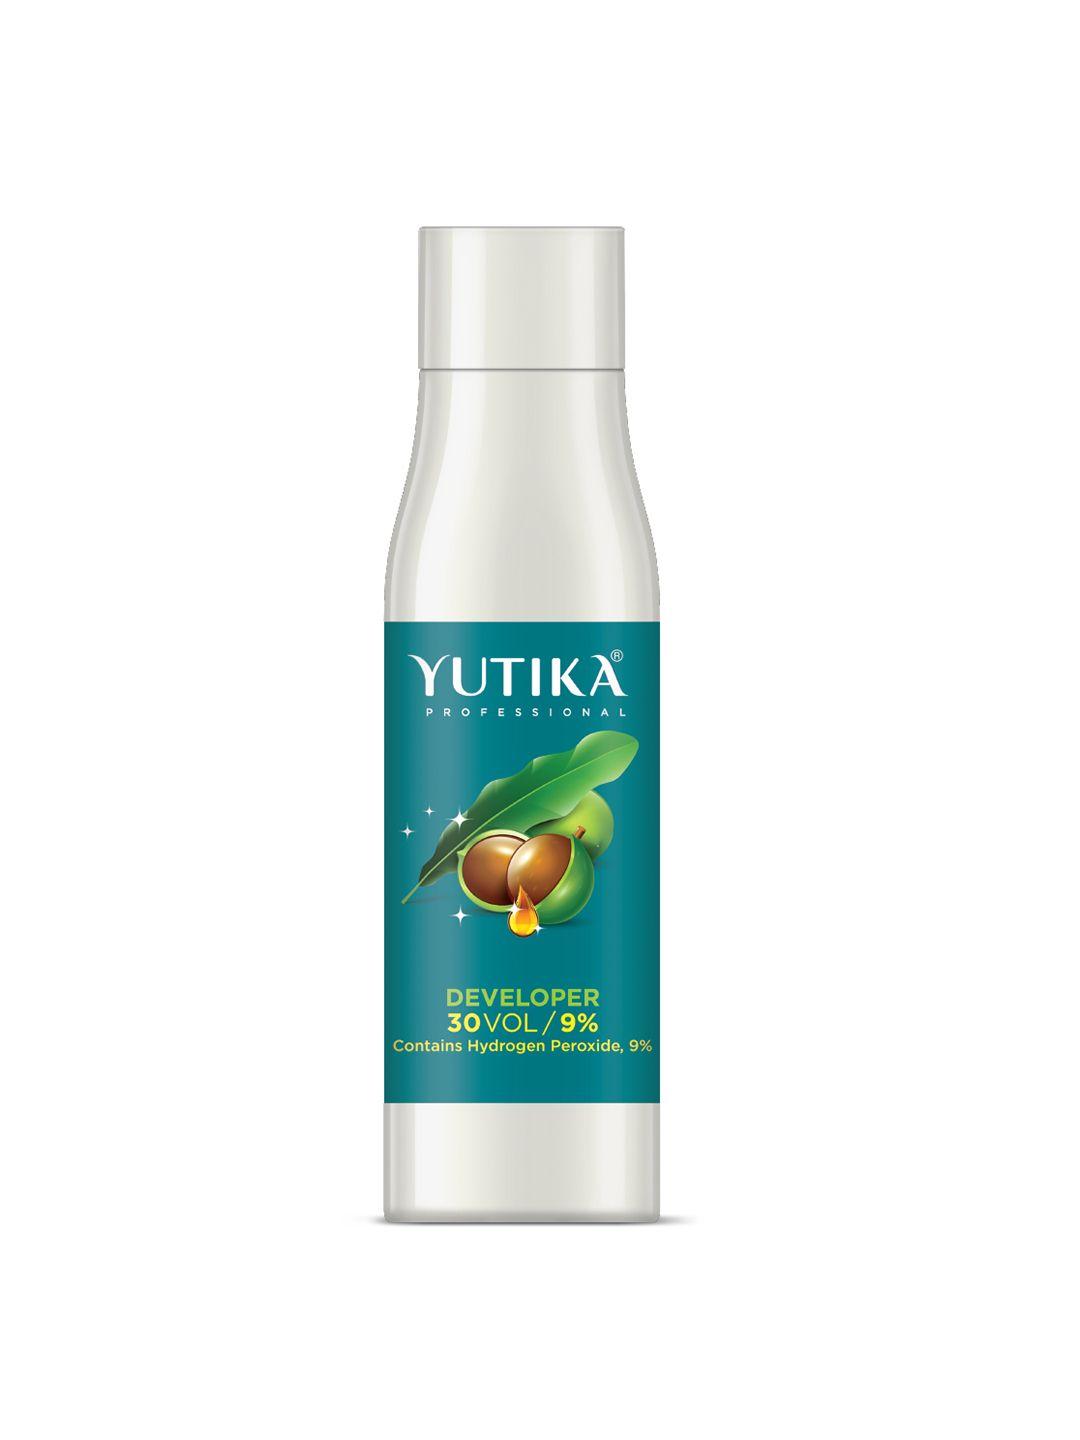 yutika professional hair developer 30 volume 9%, 250ml